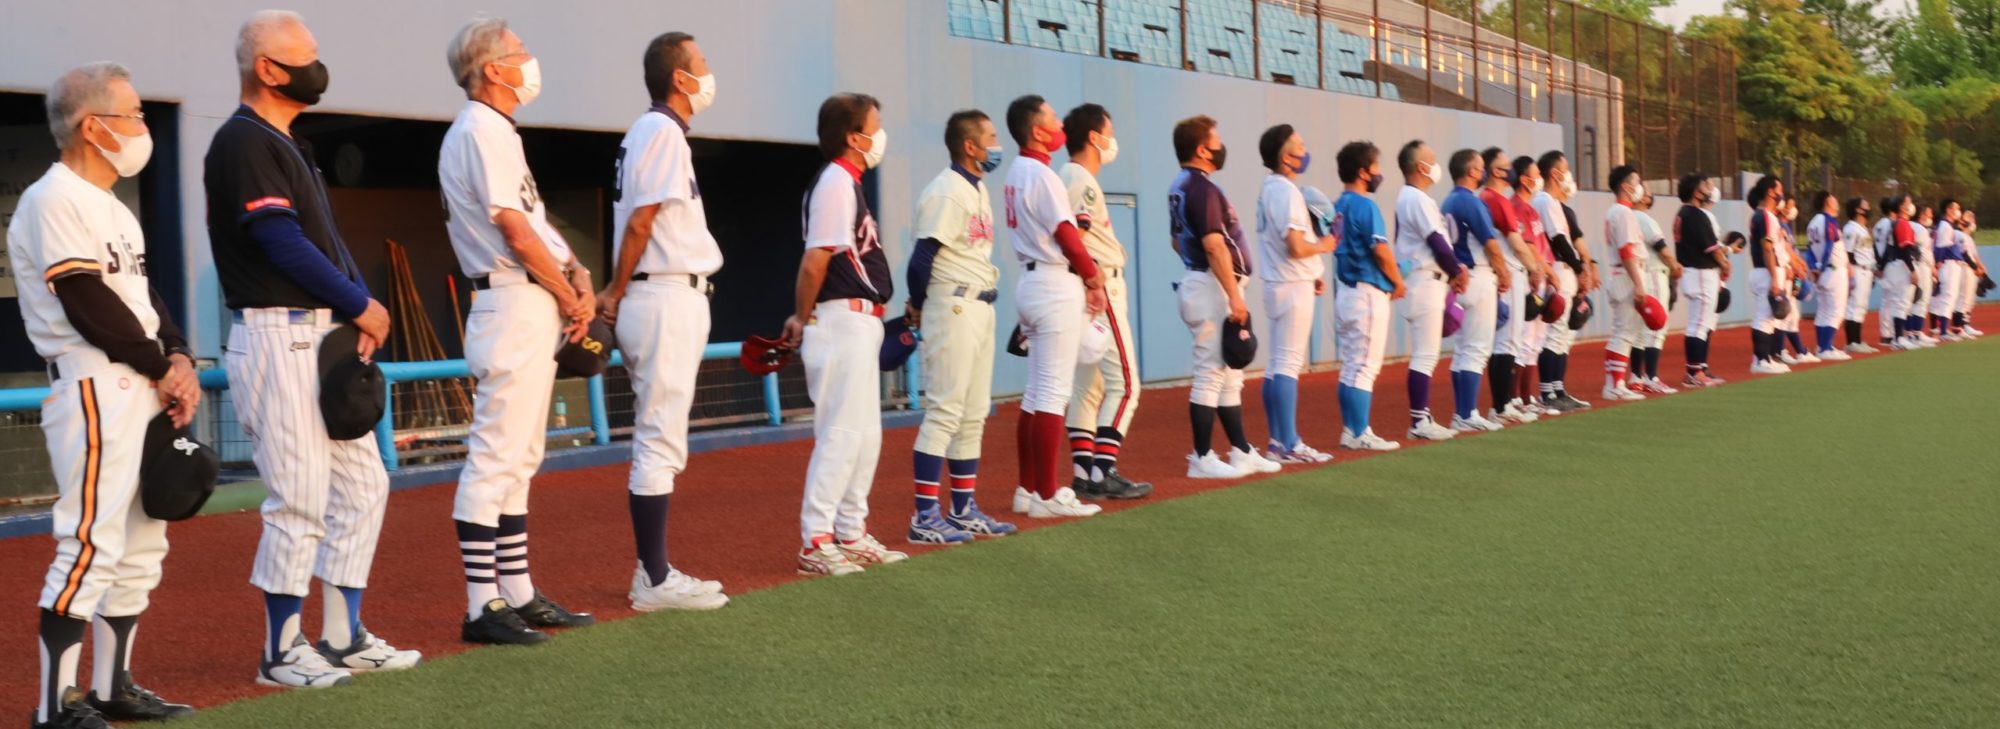 金沢市学童野球連盟